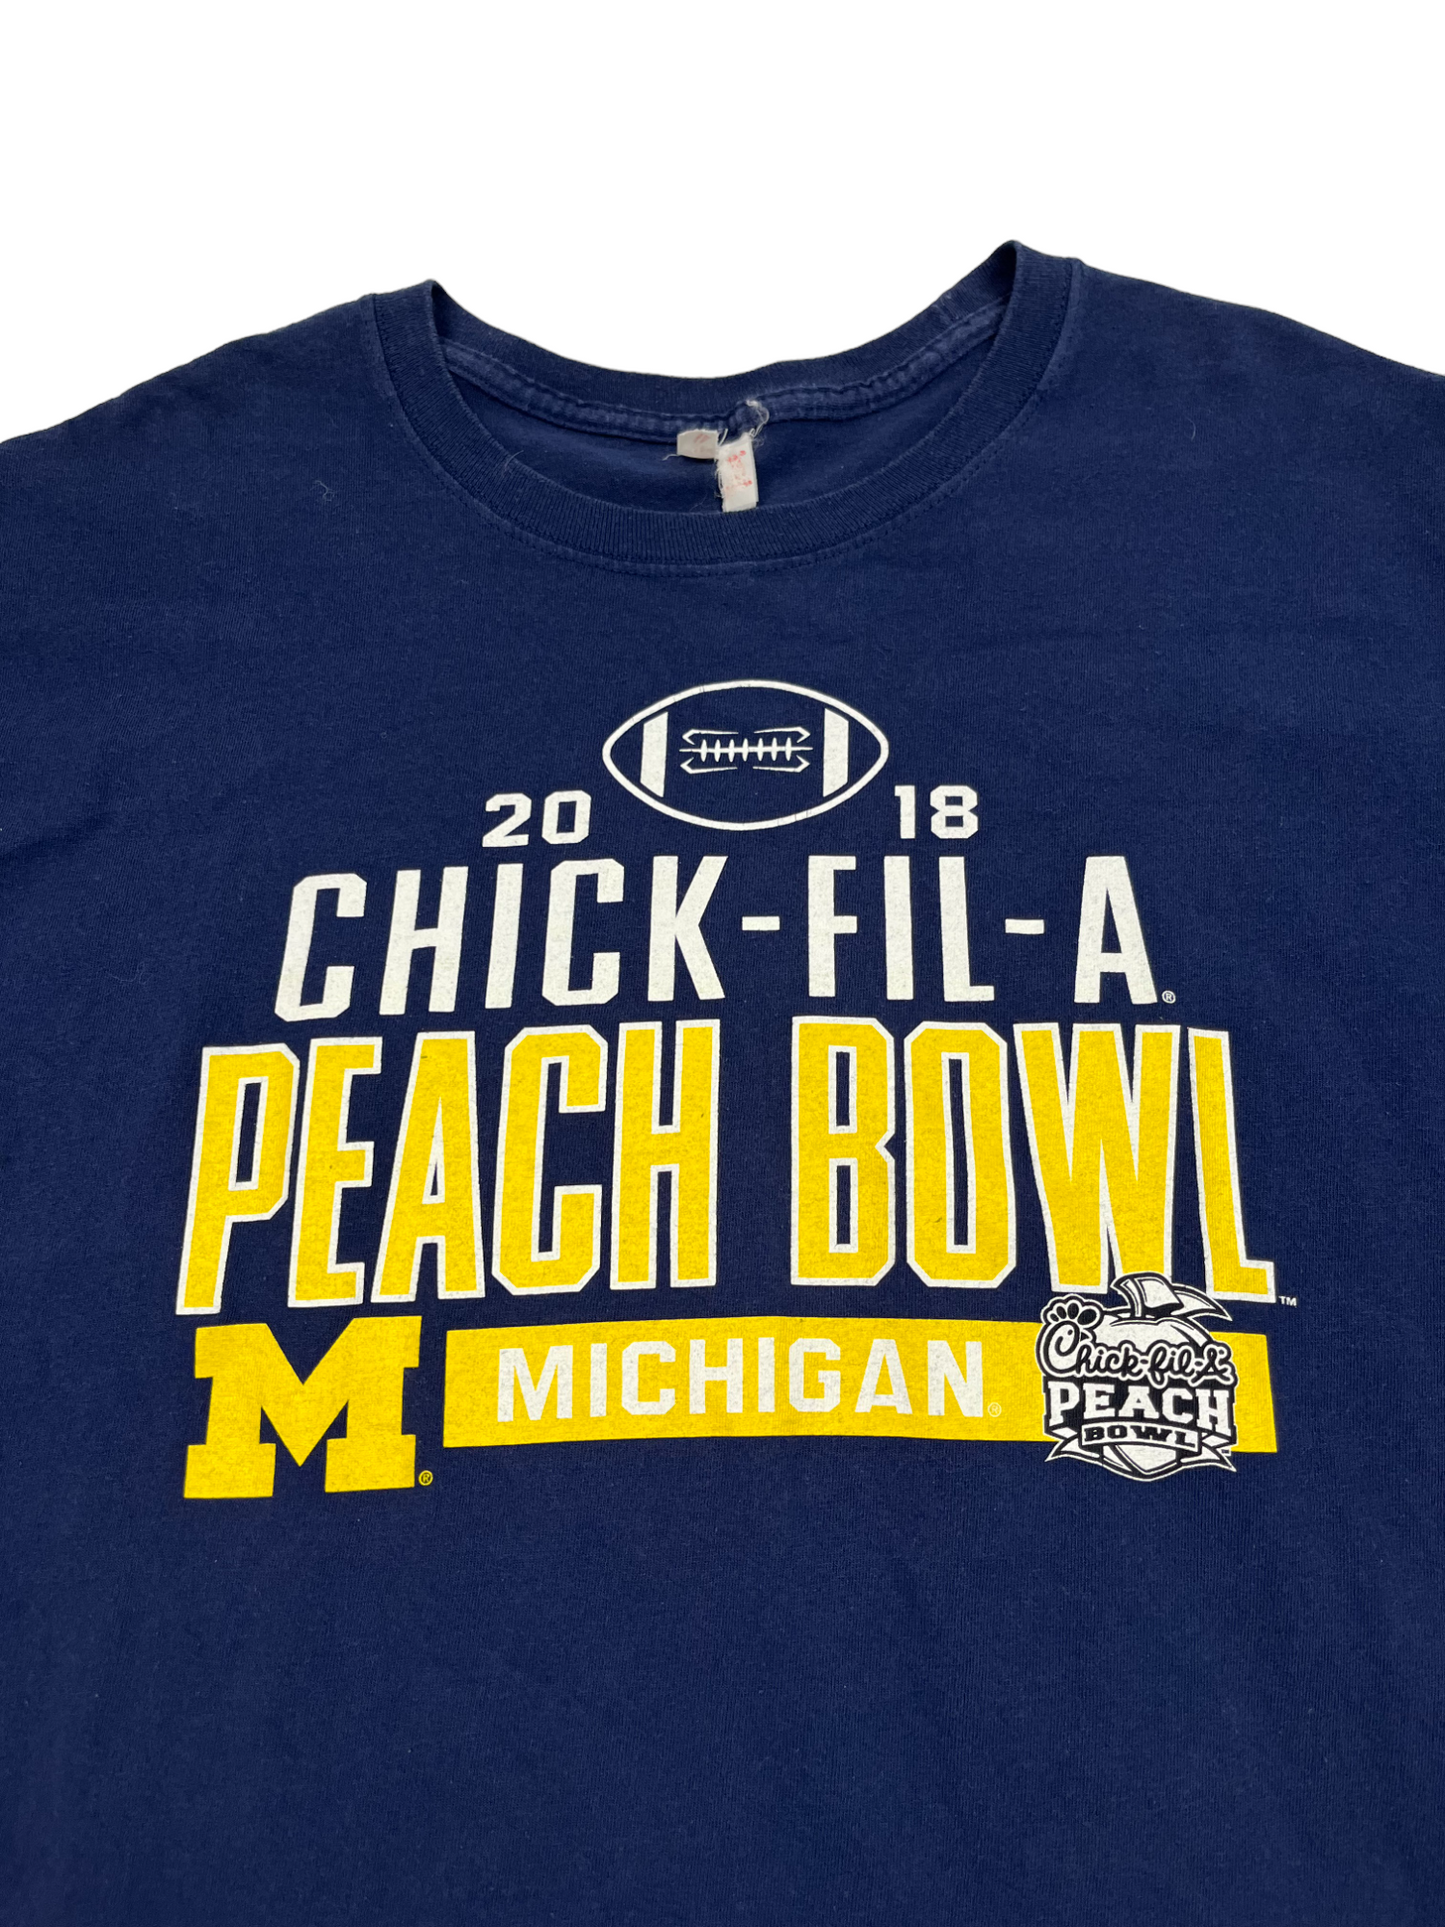 Peach Bowl Michigan Tee